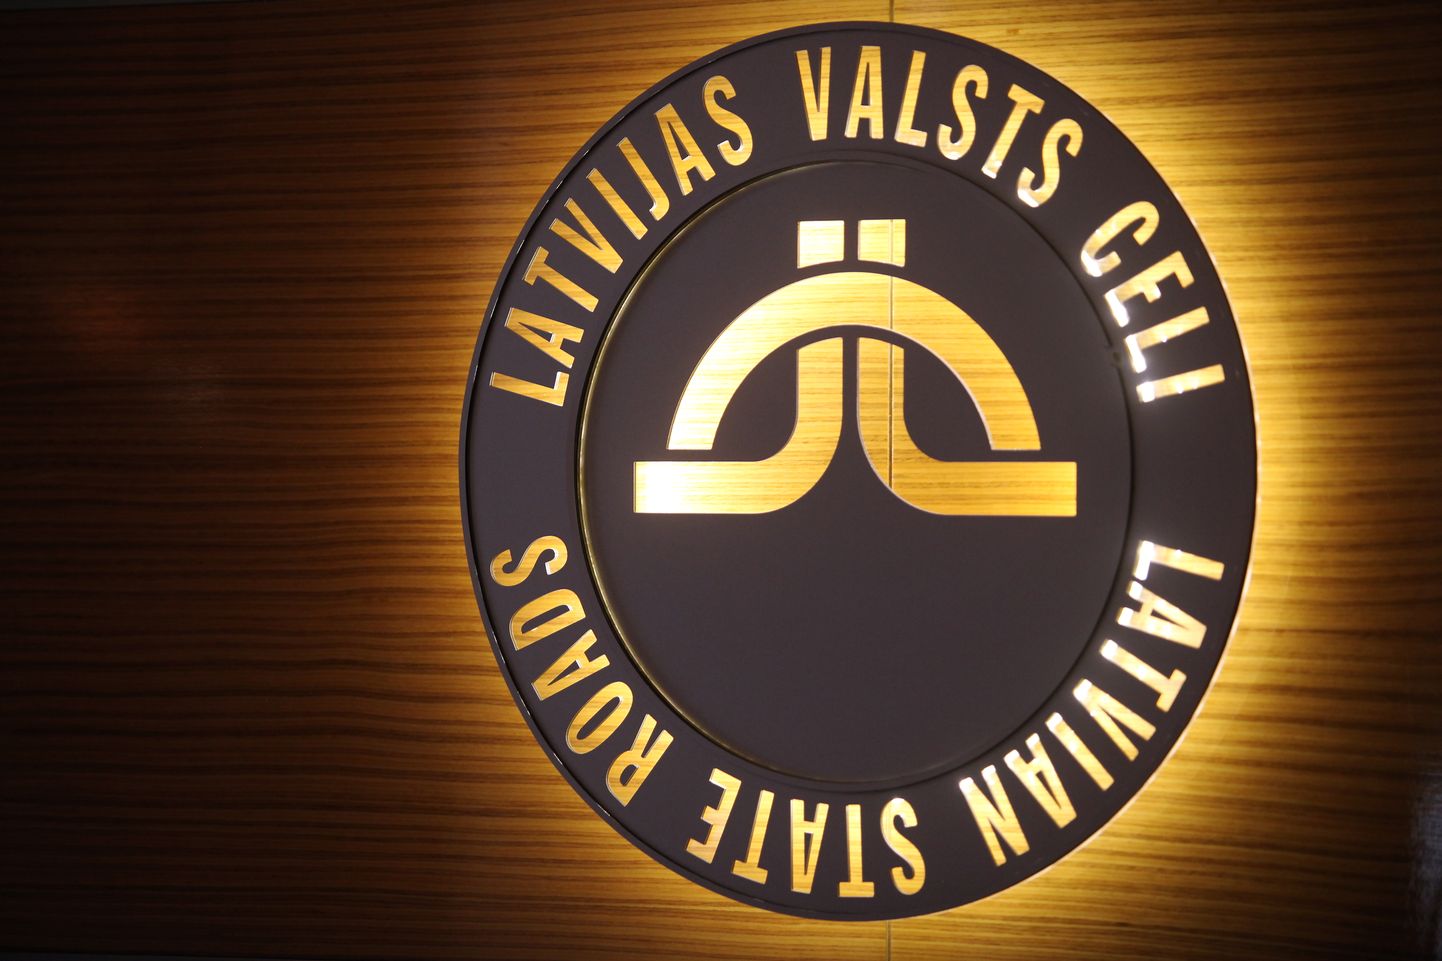 VAS "Latvijas valsts ceļi" logo.